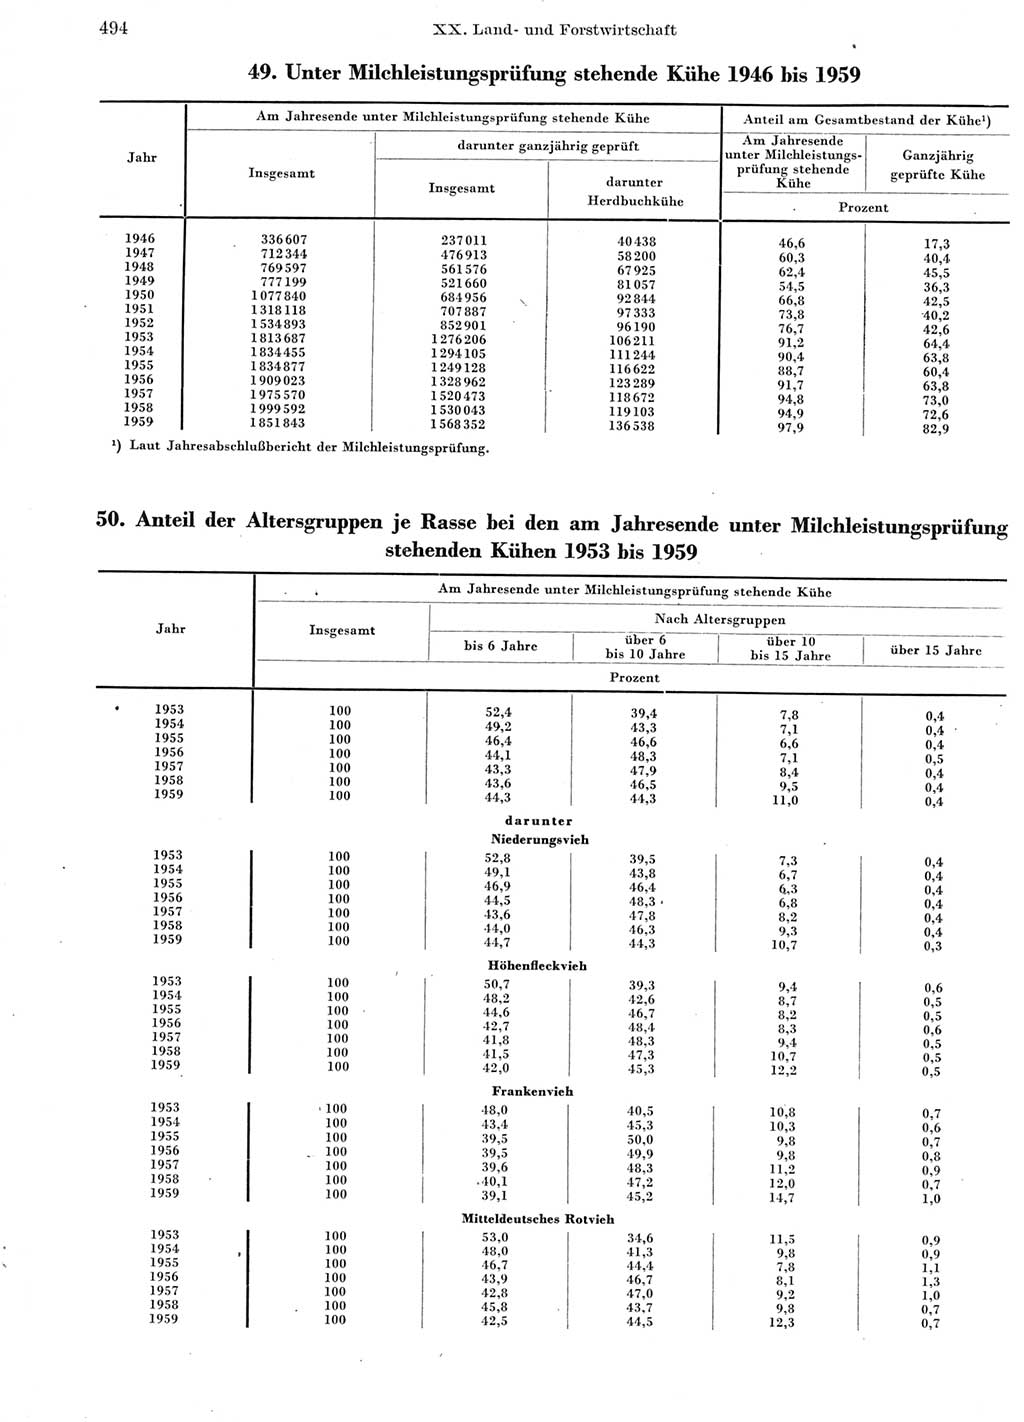 Statistisches Jahrbuch der Deutschen Demokratischen Republik (DDR) 1960-1961, Seite 494 (Stat. Jb. DDR 1960-1961, S. 494)